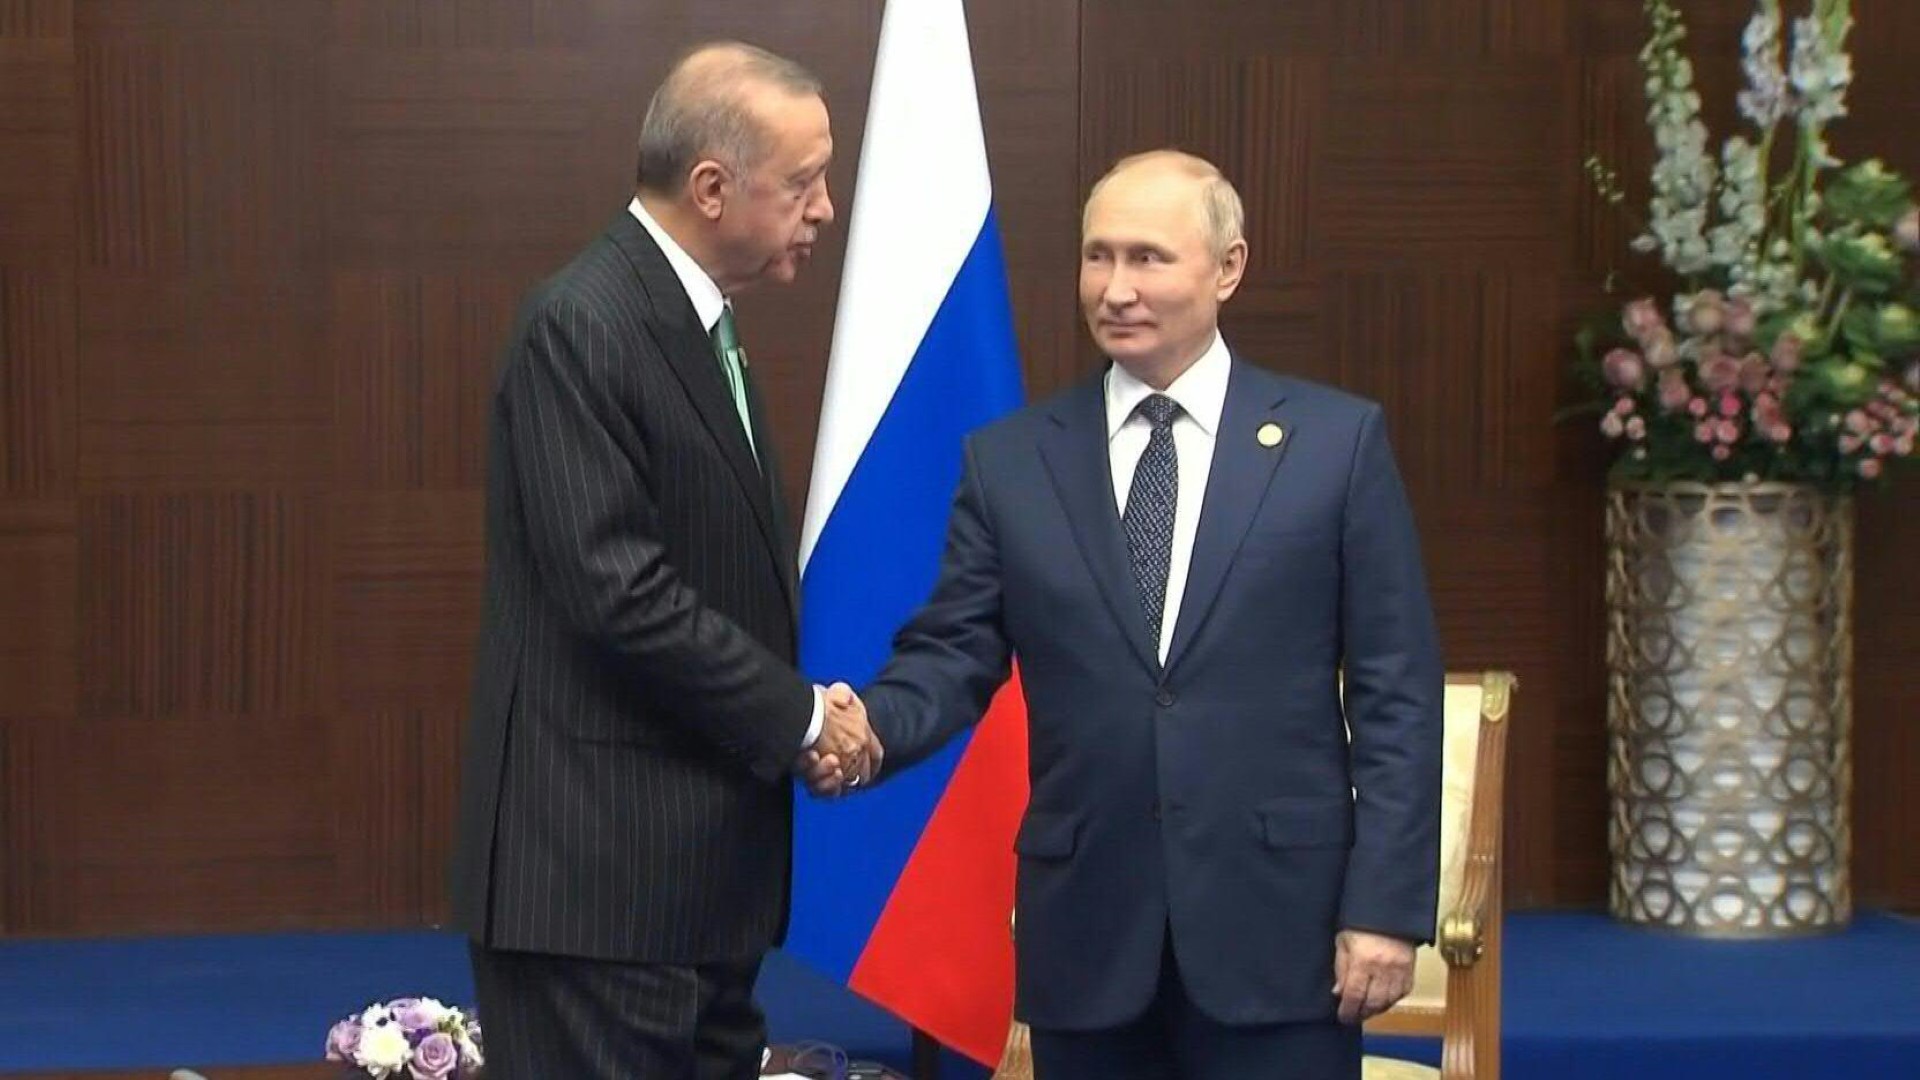 El presidente turco, Recep Tayyip Erdogan, quien defendió los lazos económicos de su país con Moscú, en uno de sus encuentros con su par ruso, Vladimir Putin. (AFP)